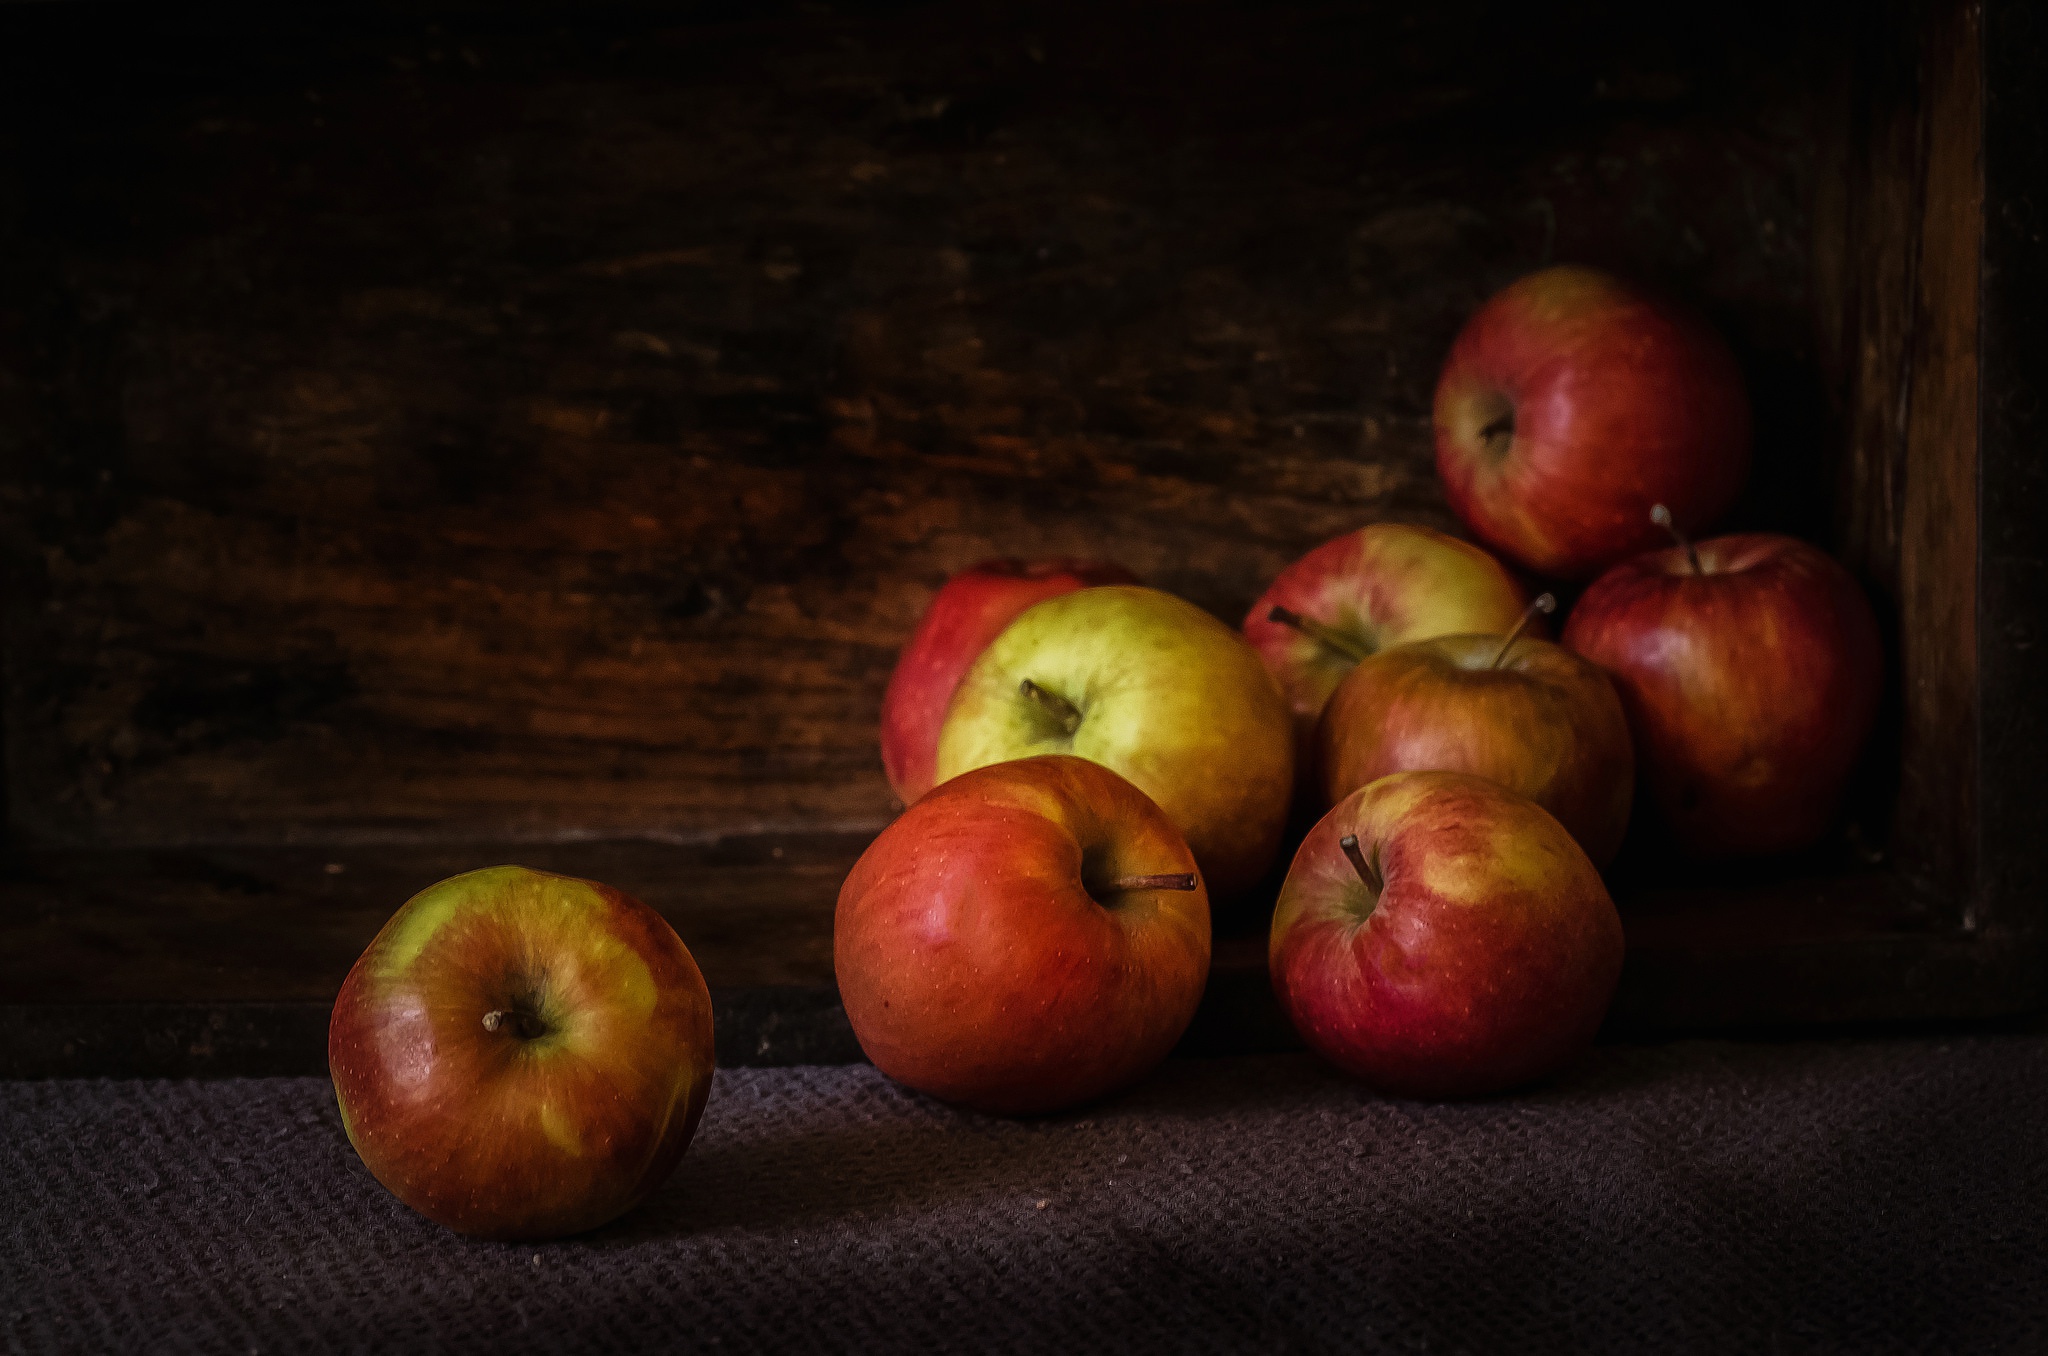 на столе лежало 5 яблок